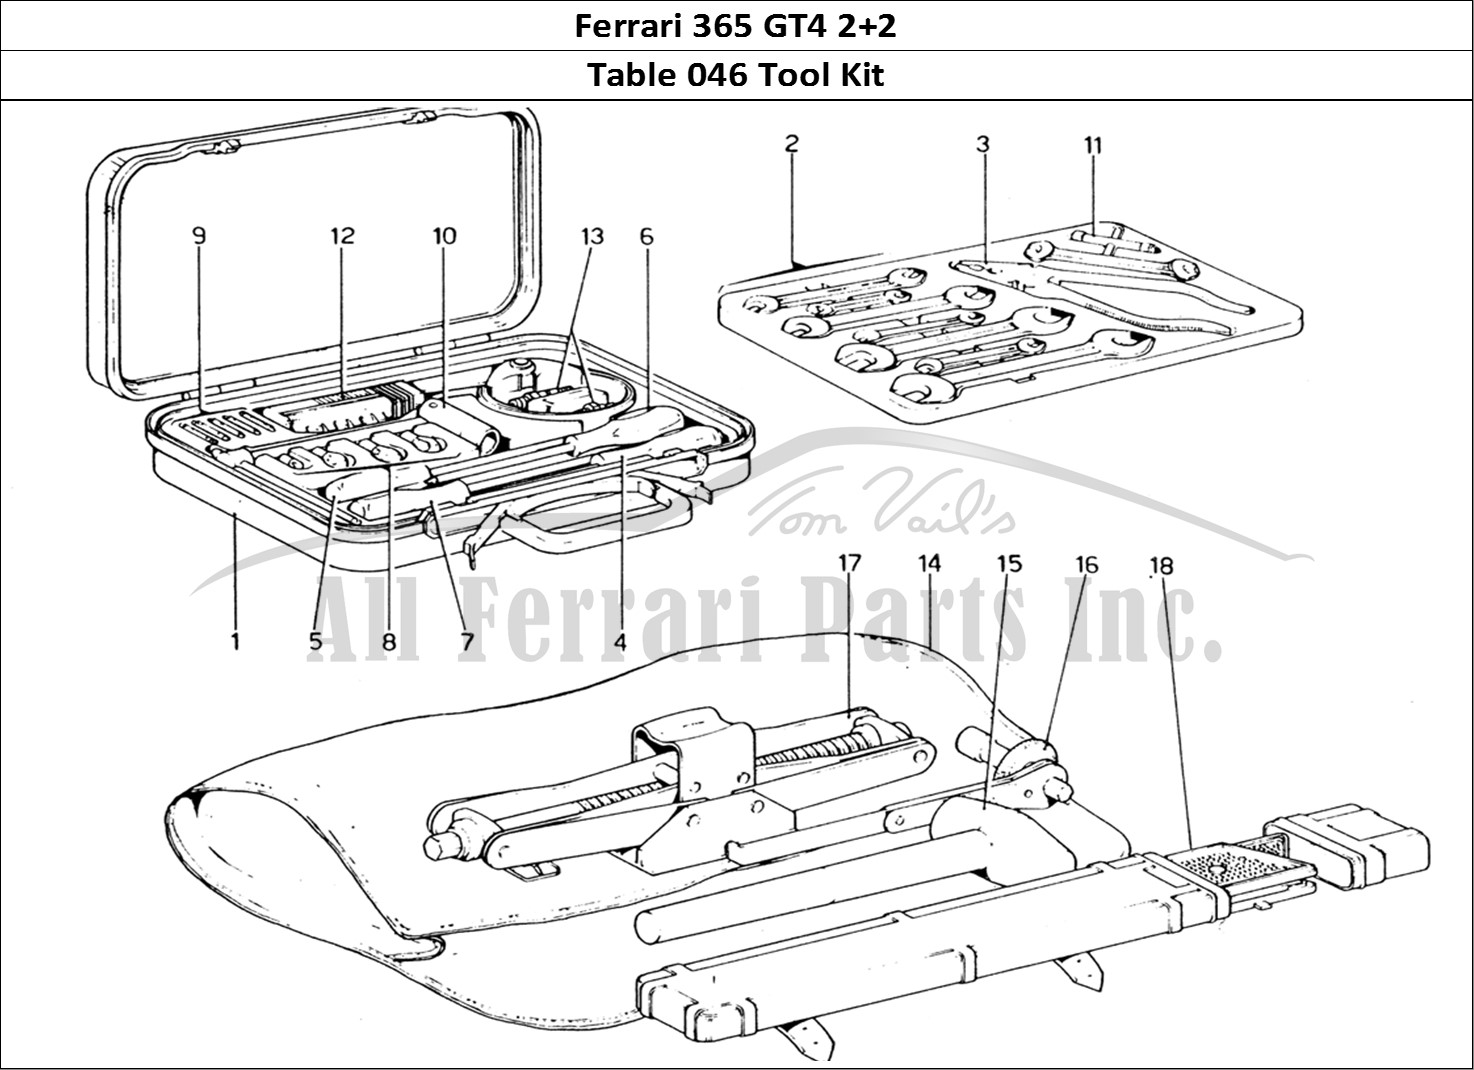 Ferrari Parts Ferrari 365 GT4 2+2 (1973) Page 046 Tool-Kit